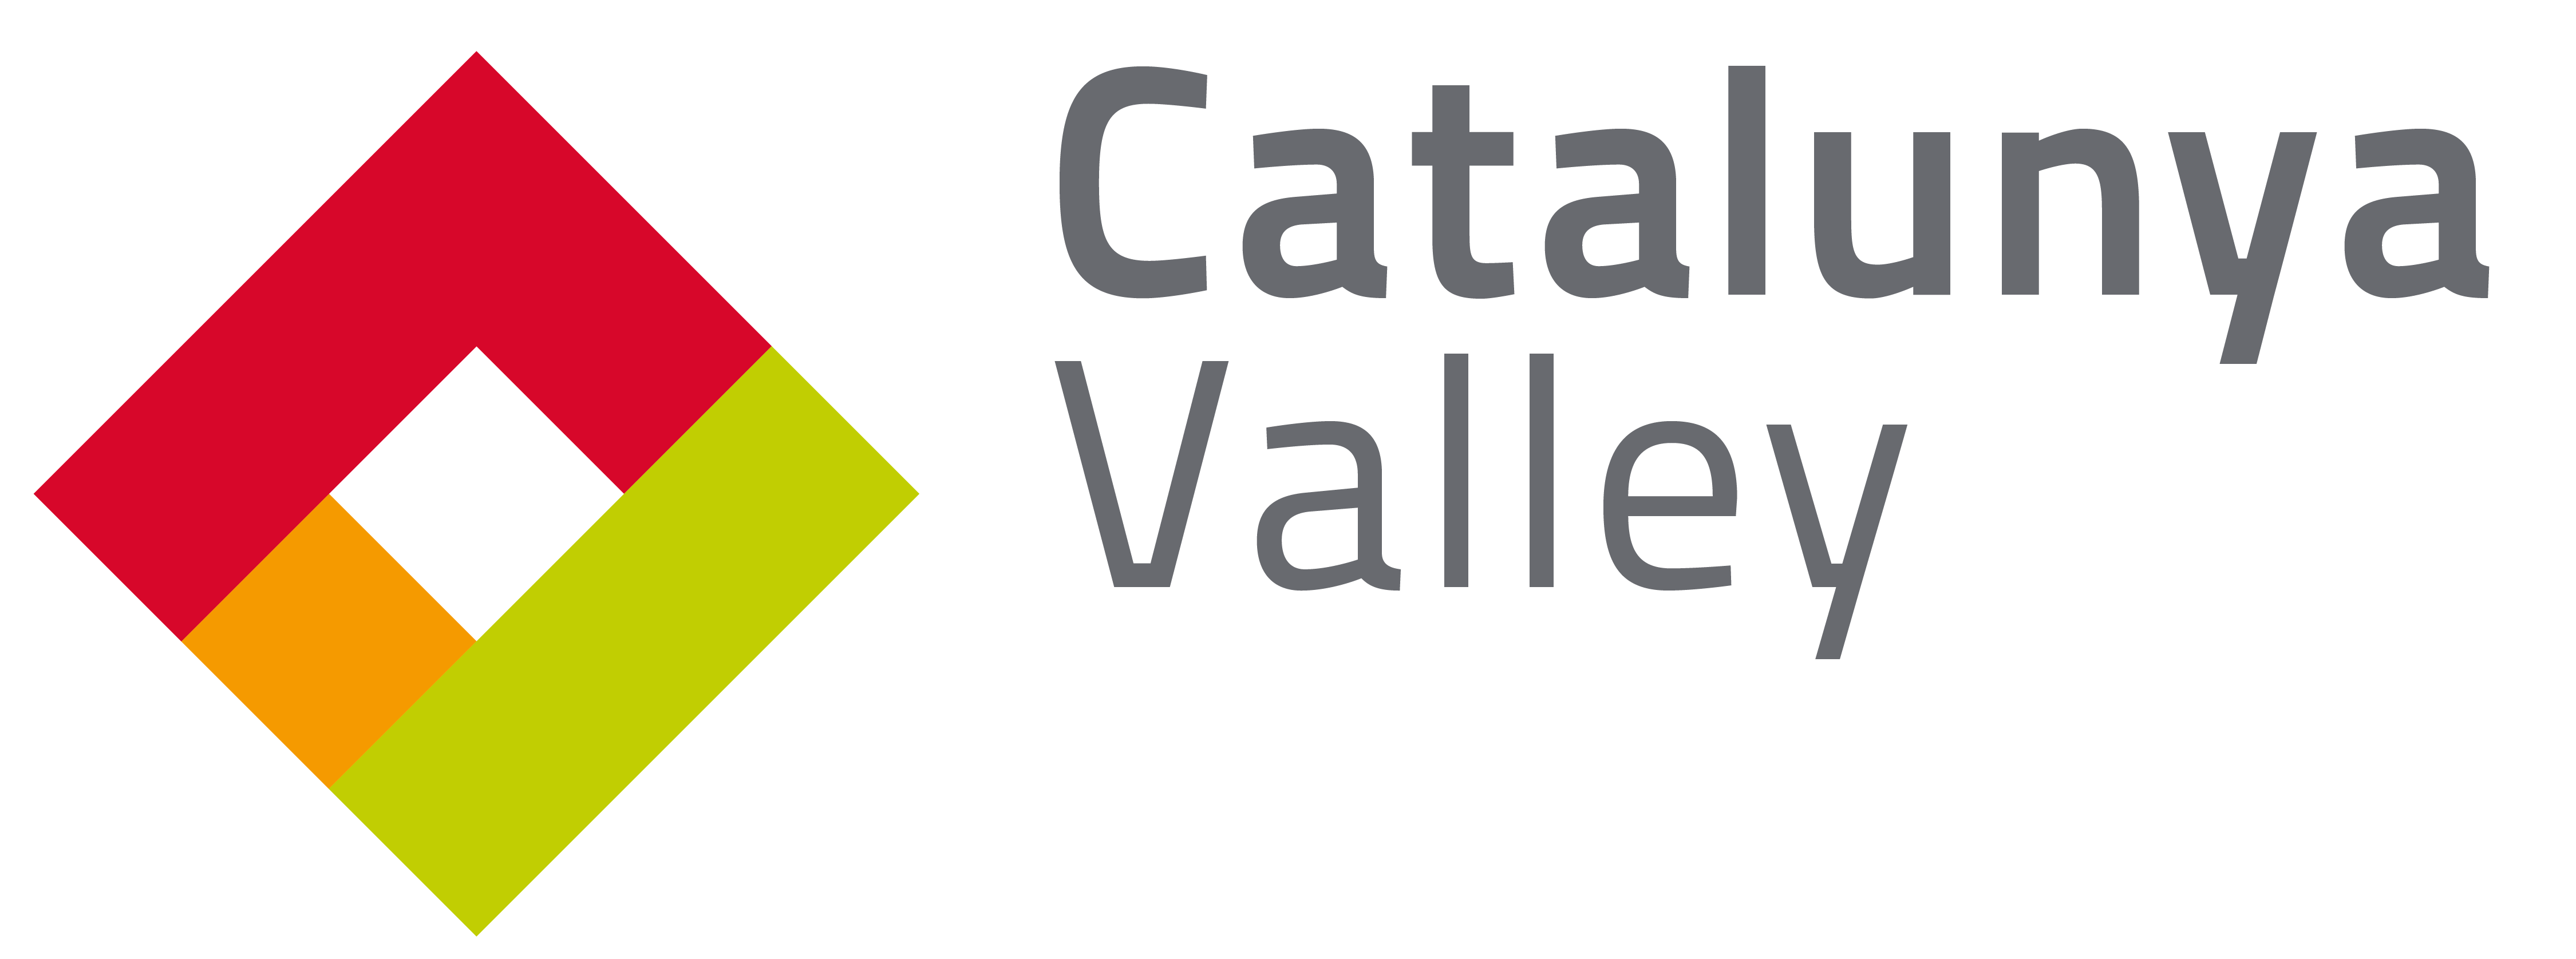 Catalunya Valley - Logotip